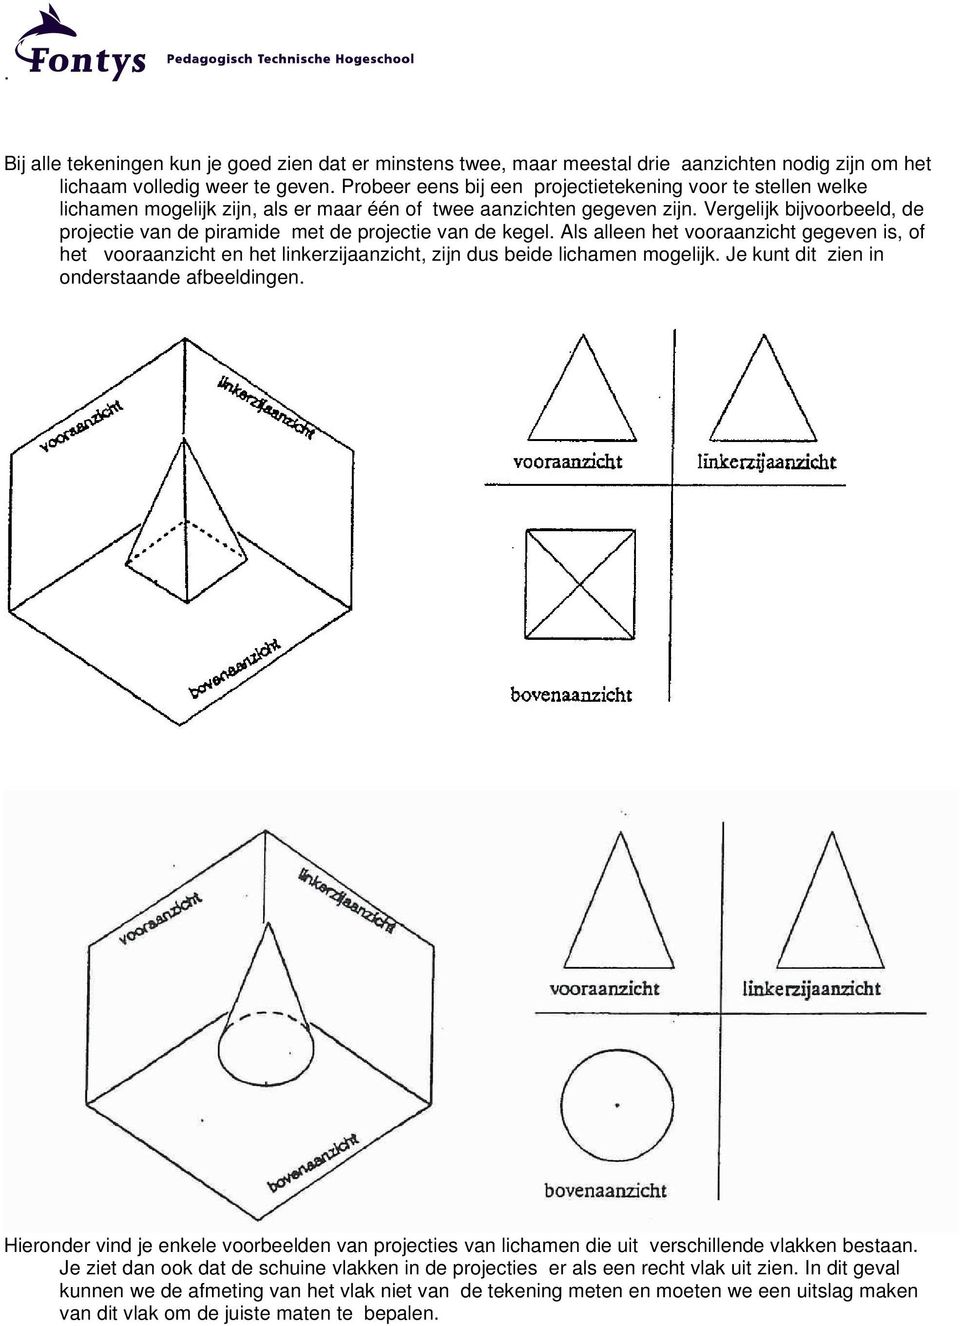 Vergelijk bijvoorbeeld, de projectie van de piramide met de projectie van de kegel.